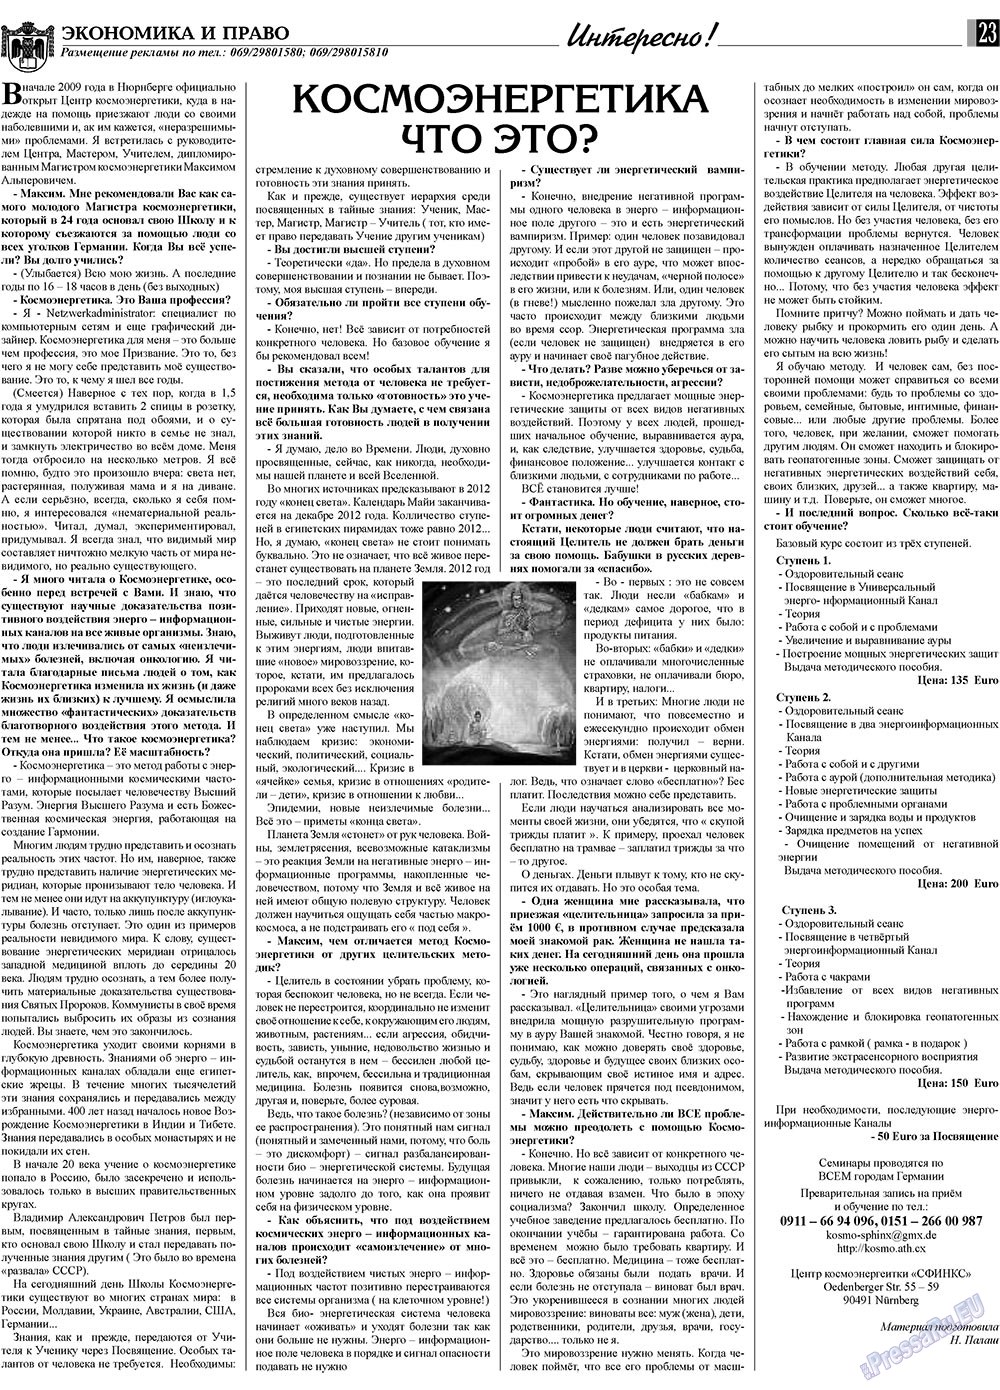 Экономика и право, газета. 2010 №1 стр.23